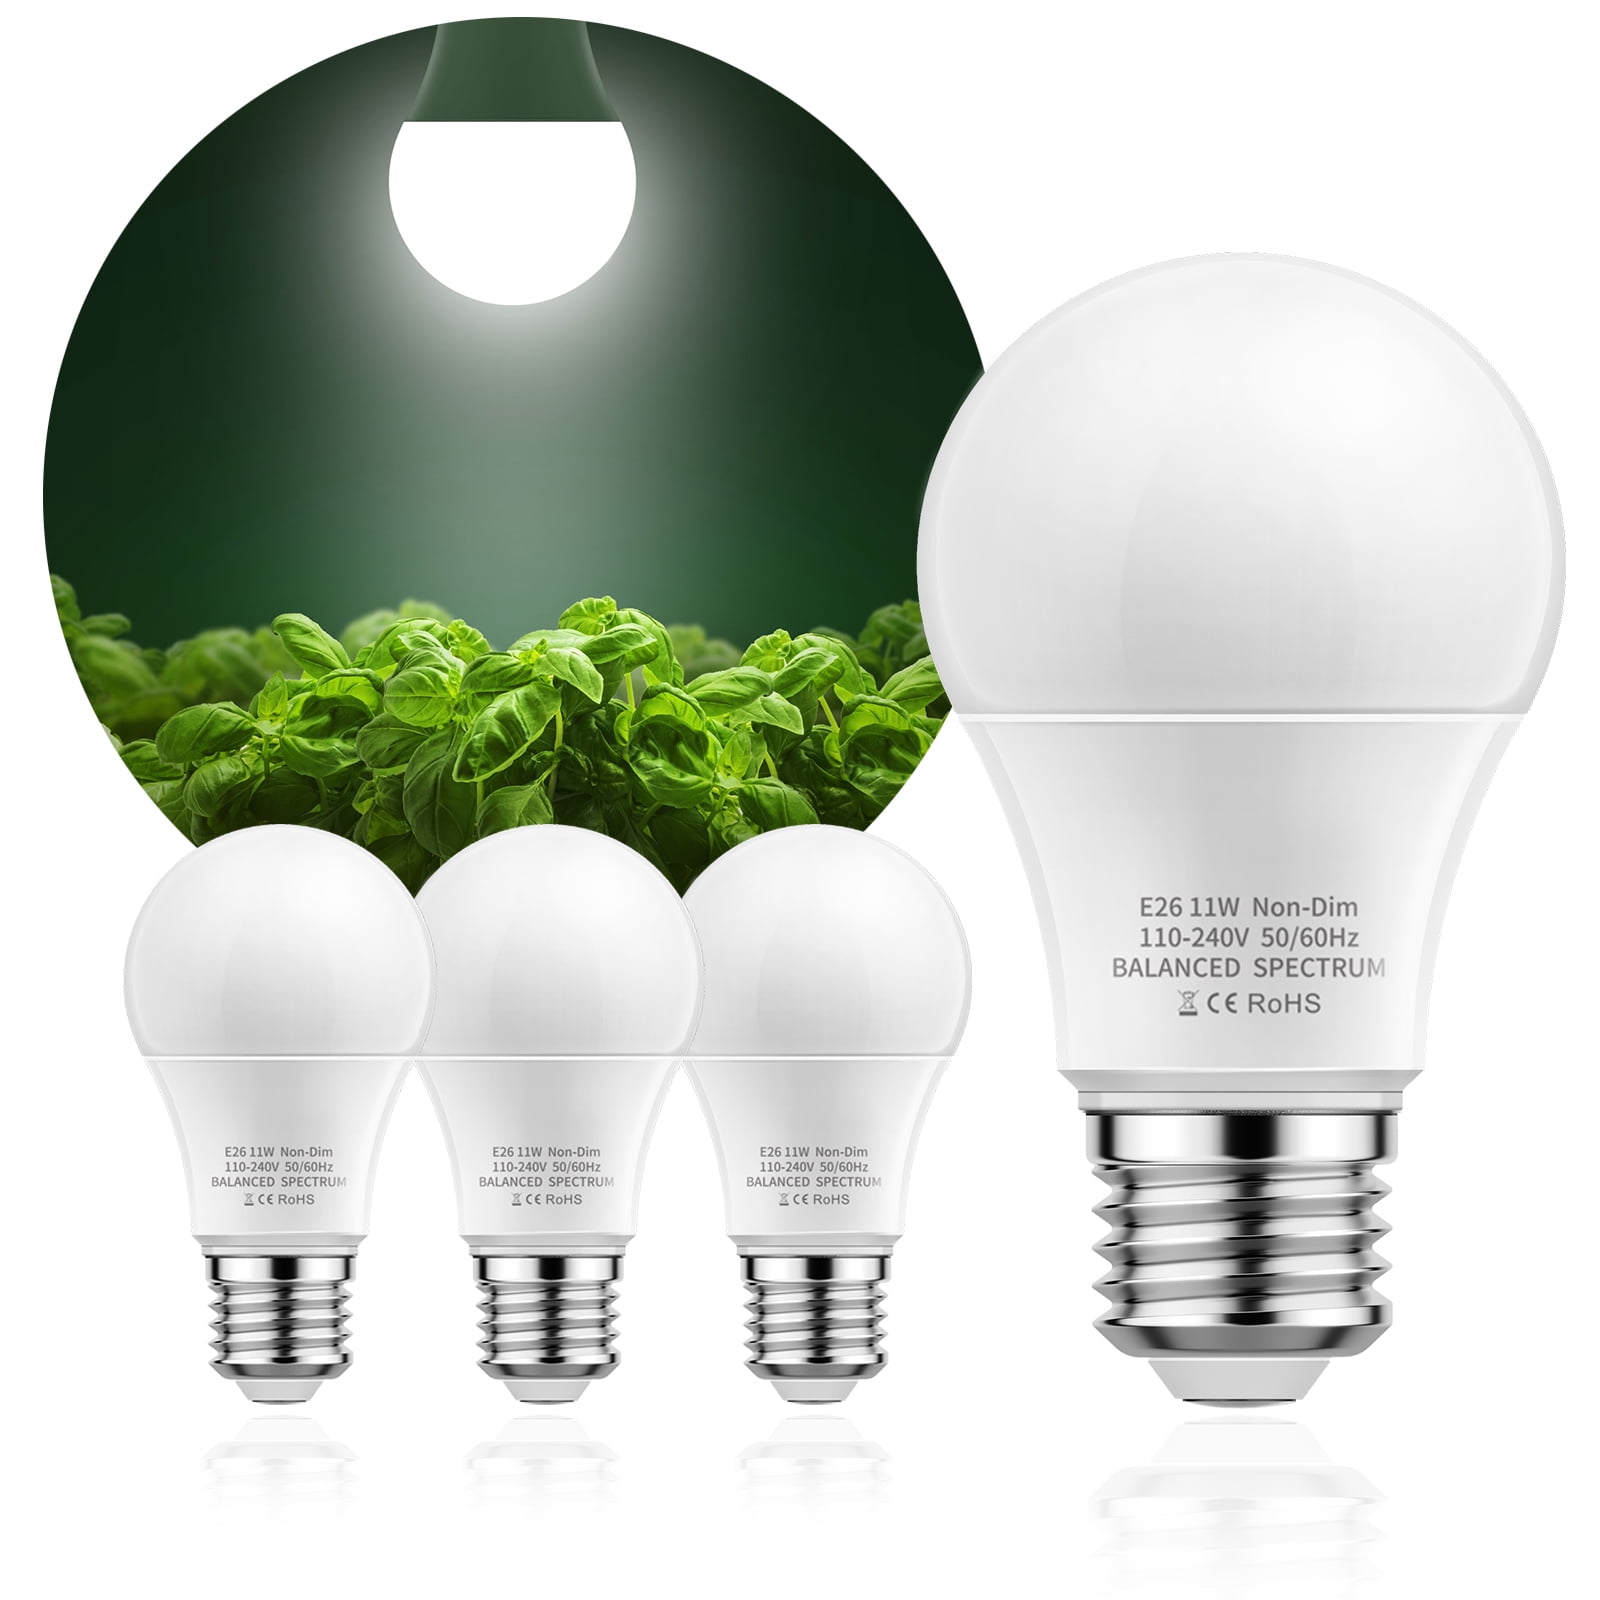 YANSUN Grow Light Bulbs, LED Grow Light Bulb A19 Bulb, Full Spectrum Grow Light Bulb, Plant Light Bulbs E26 11W Grow Bulb 100W Equivalent, Light for Indoor Plants, Seed Starting,